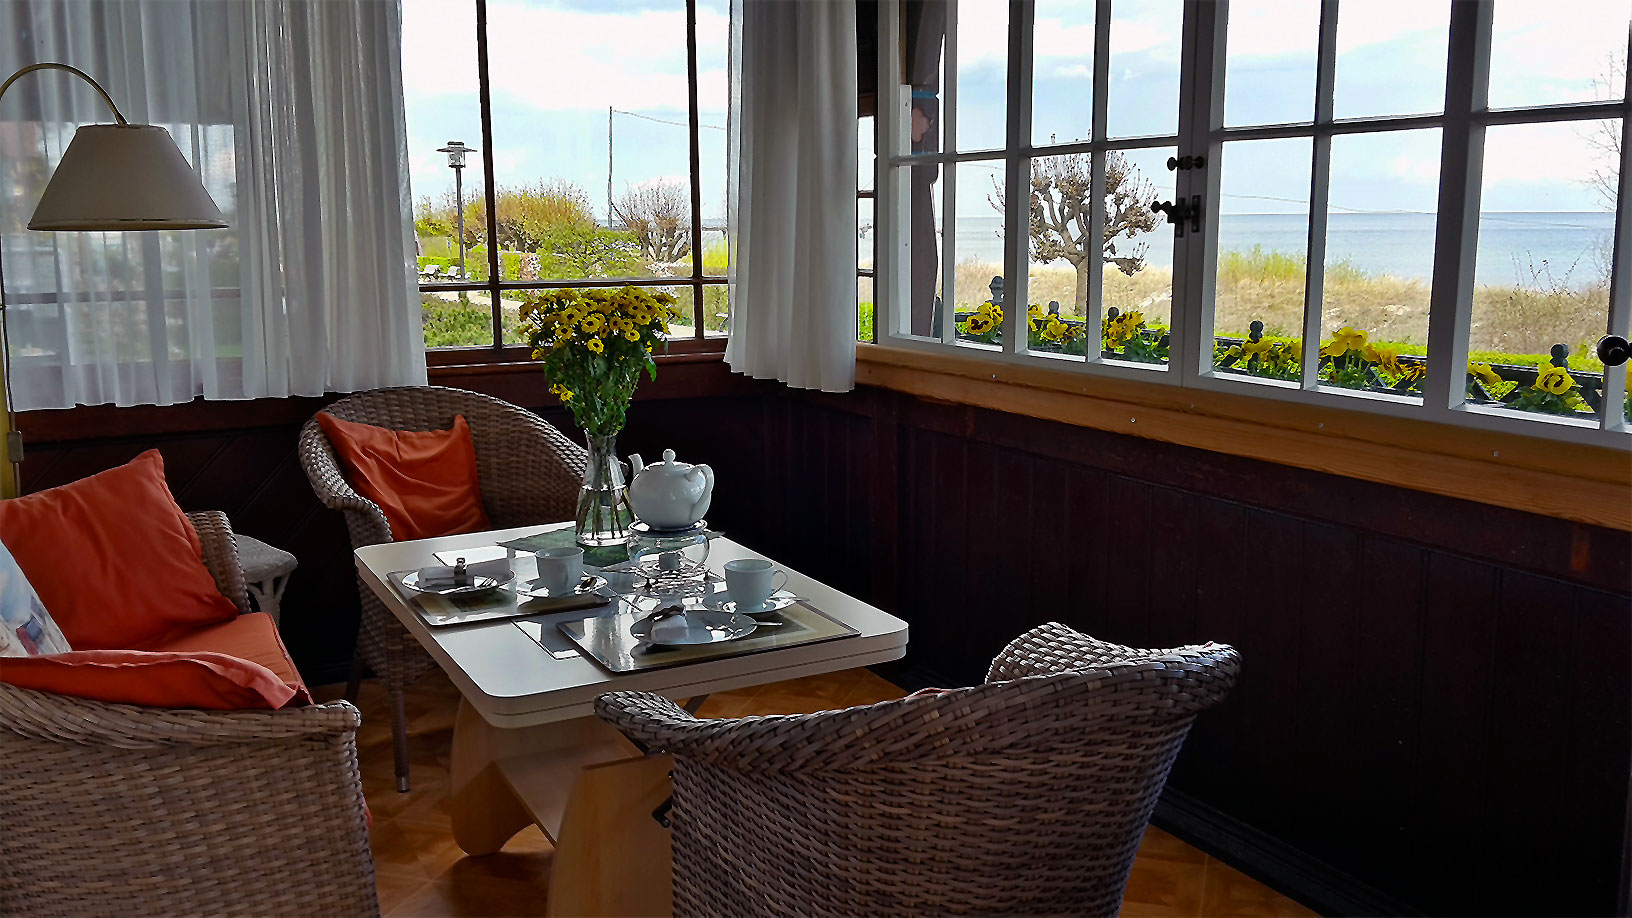 Umgebung Ferienwohnung in Bansin auf Usedom mit Meerblick